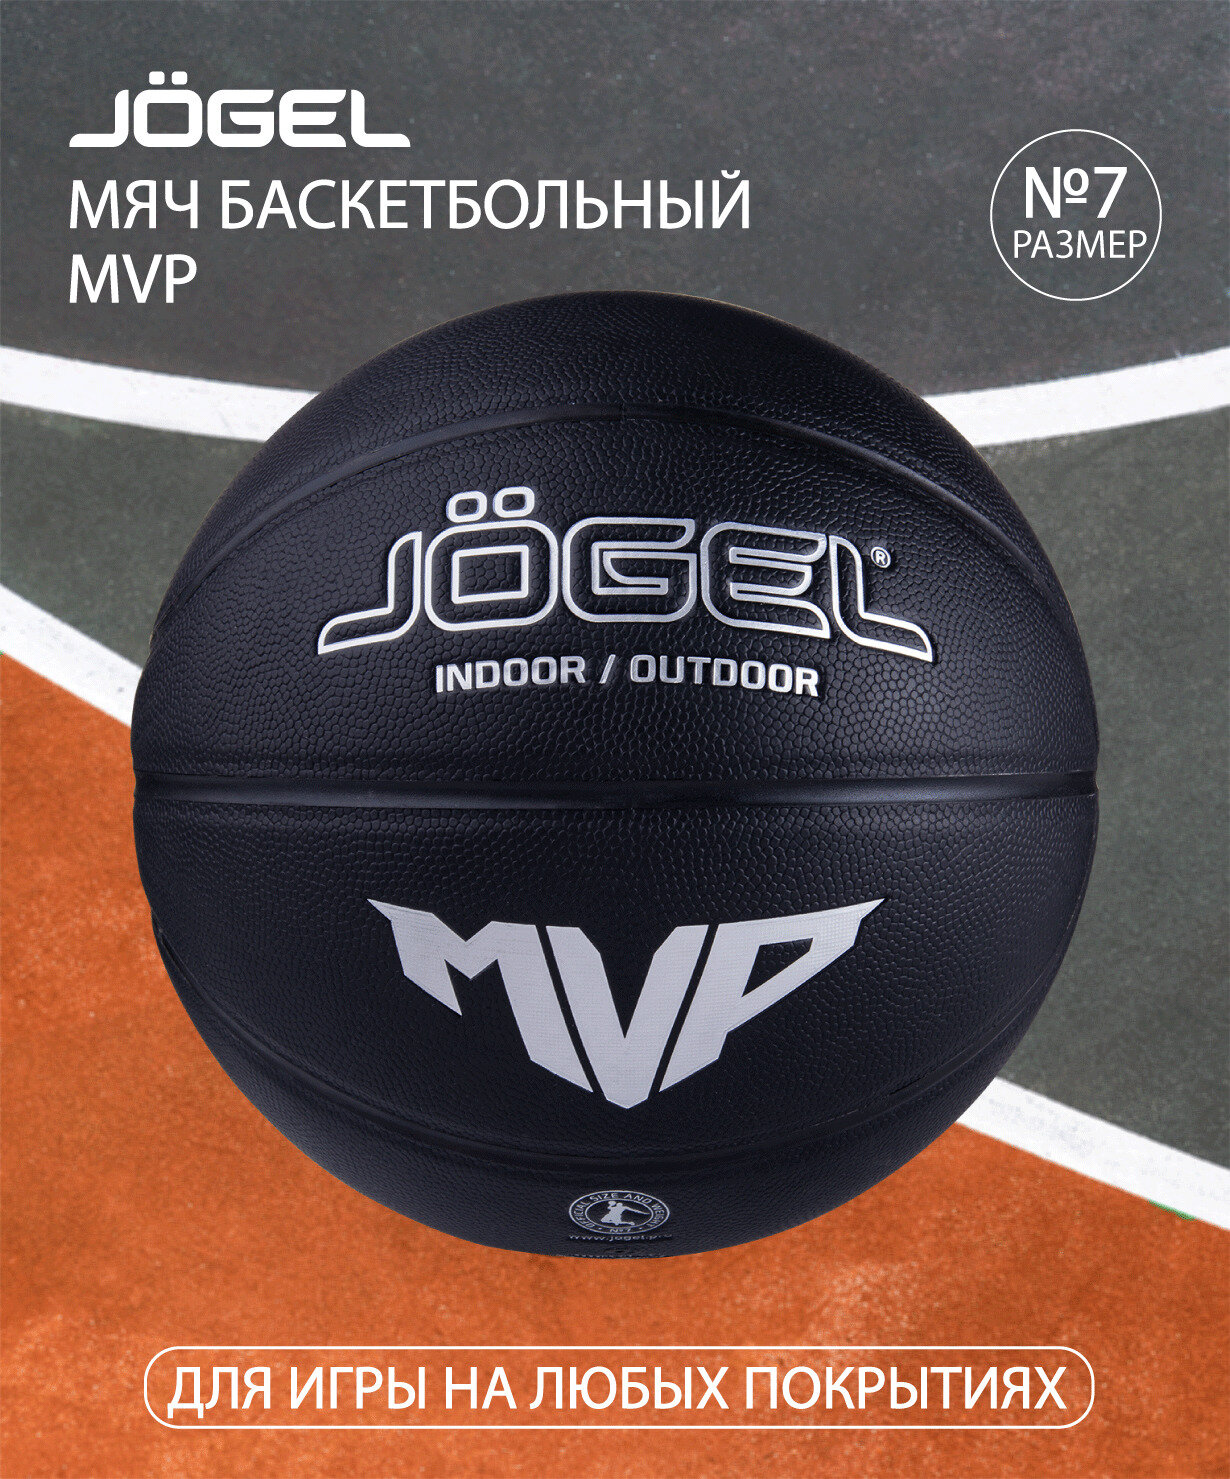 Баскетбольный мяч размер 7 спортивный для игры в баскетбол и тренировок на улице и площадке, для детей и взрослых. Мяч баскетбольный JOGEL Streets MVP №7